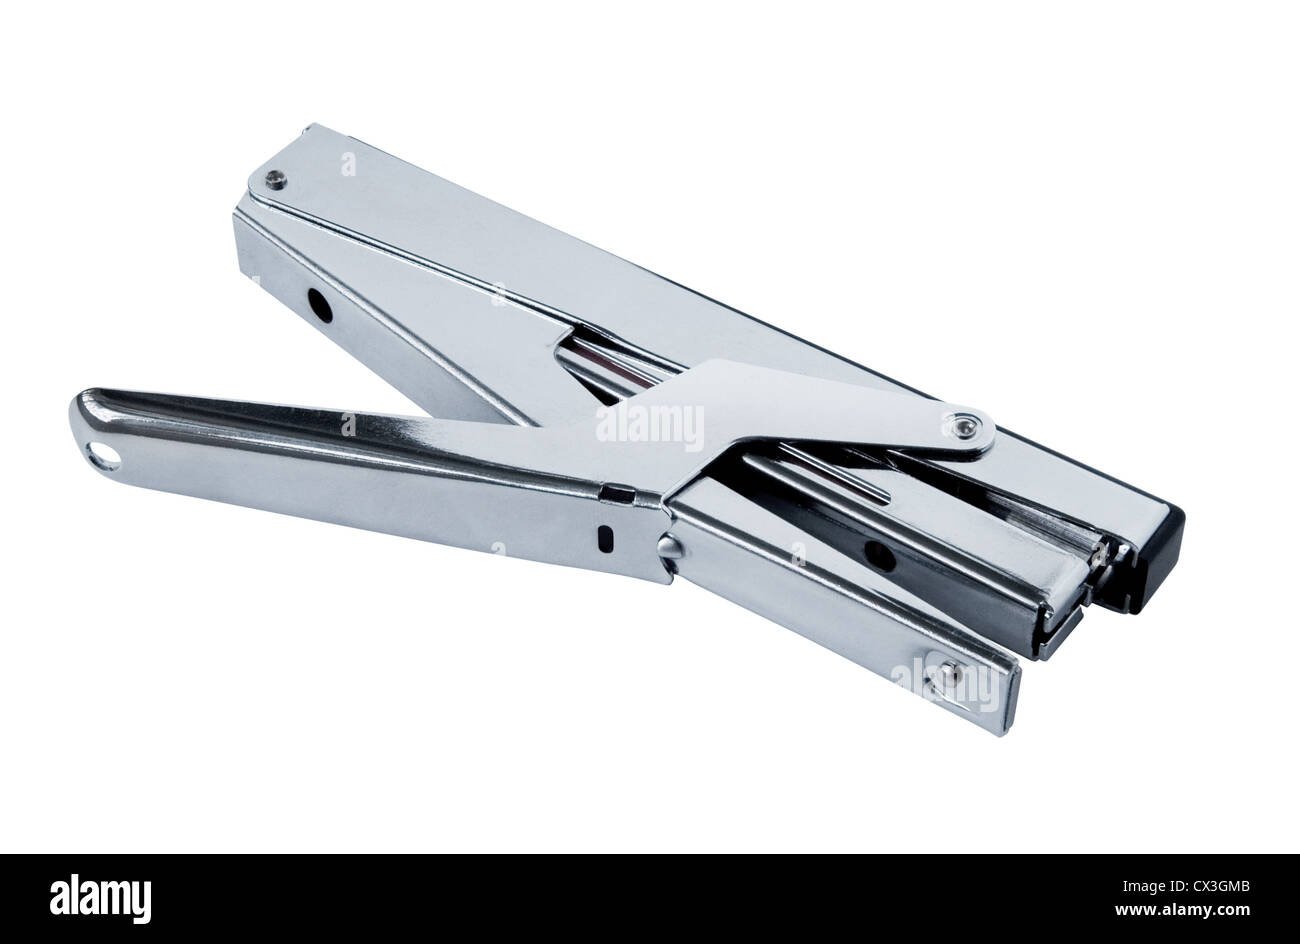 steel stapler on white background Stock Photo